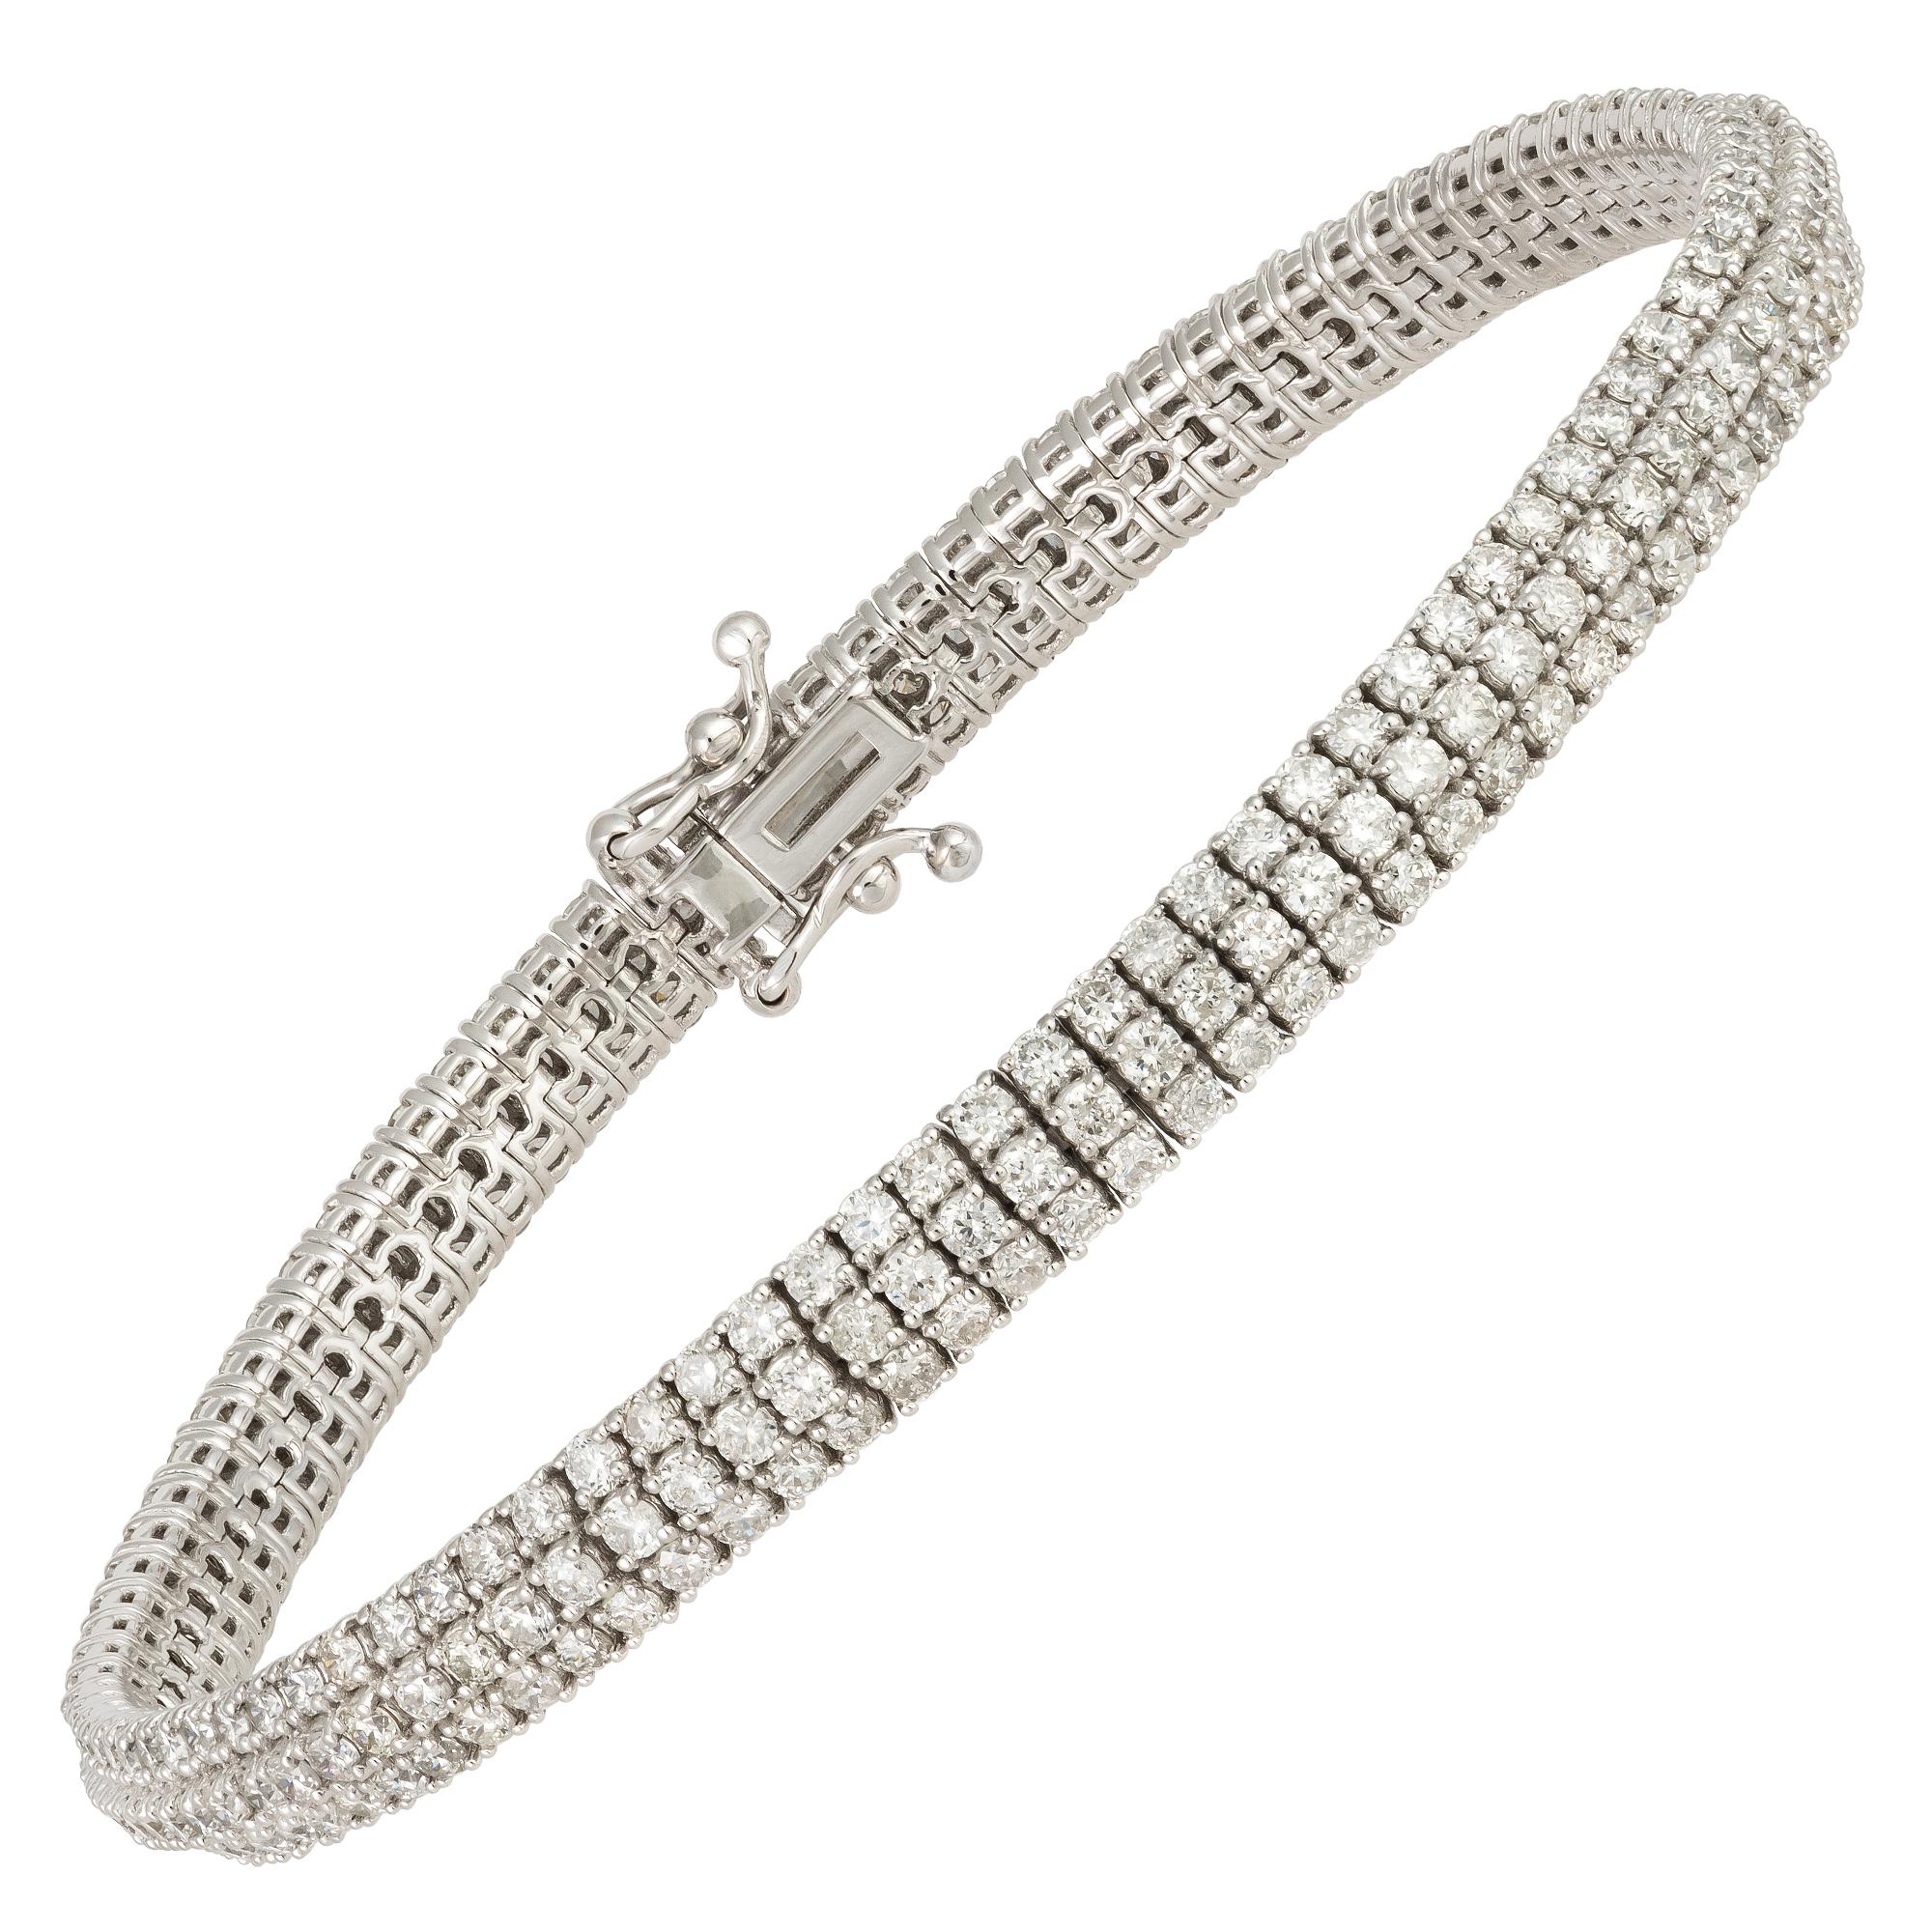 Modern Bangle White Gold 18K Bracelet Diamond For Her For Sale